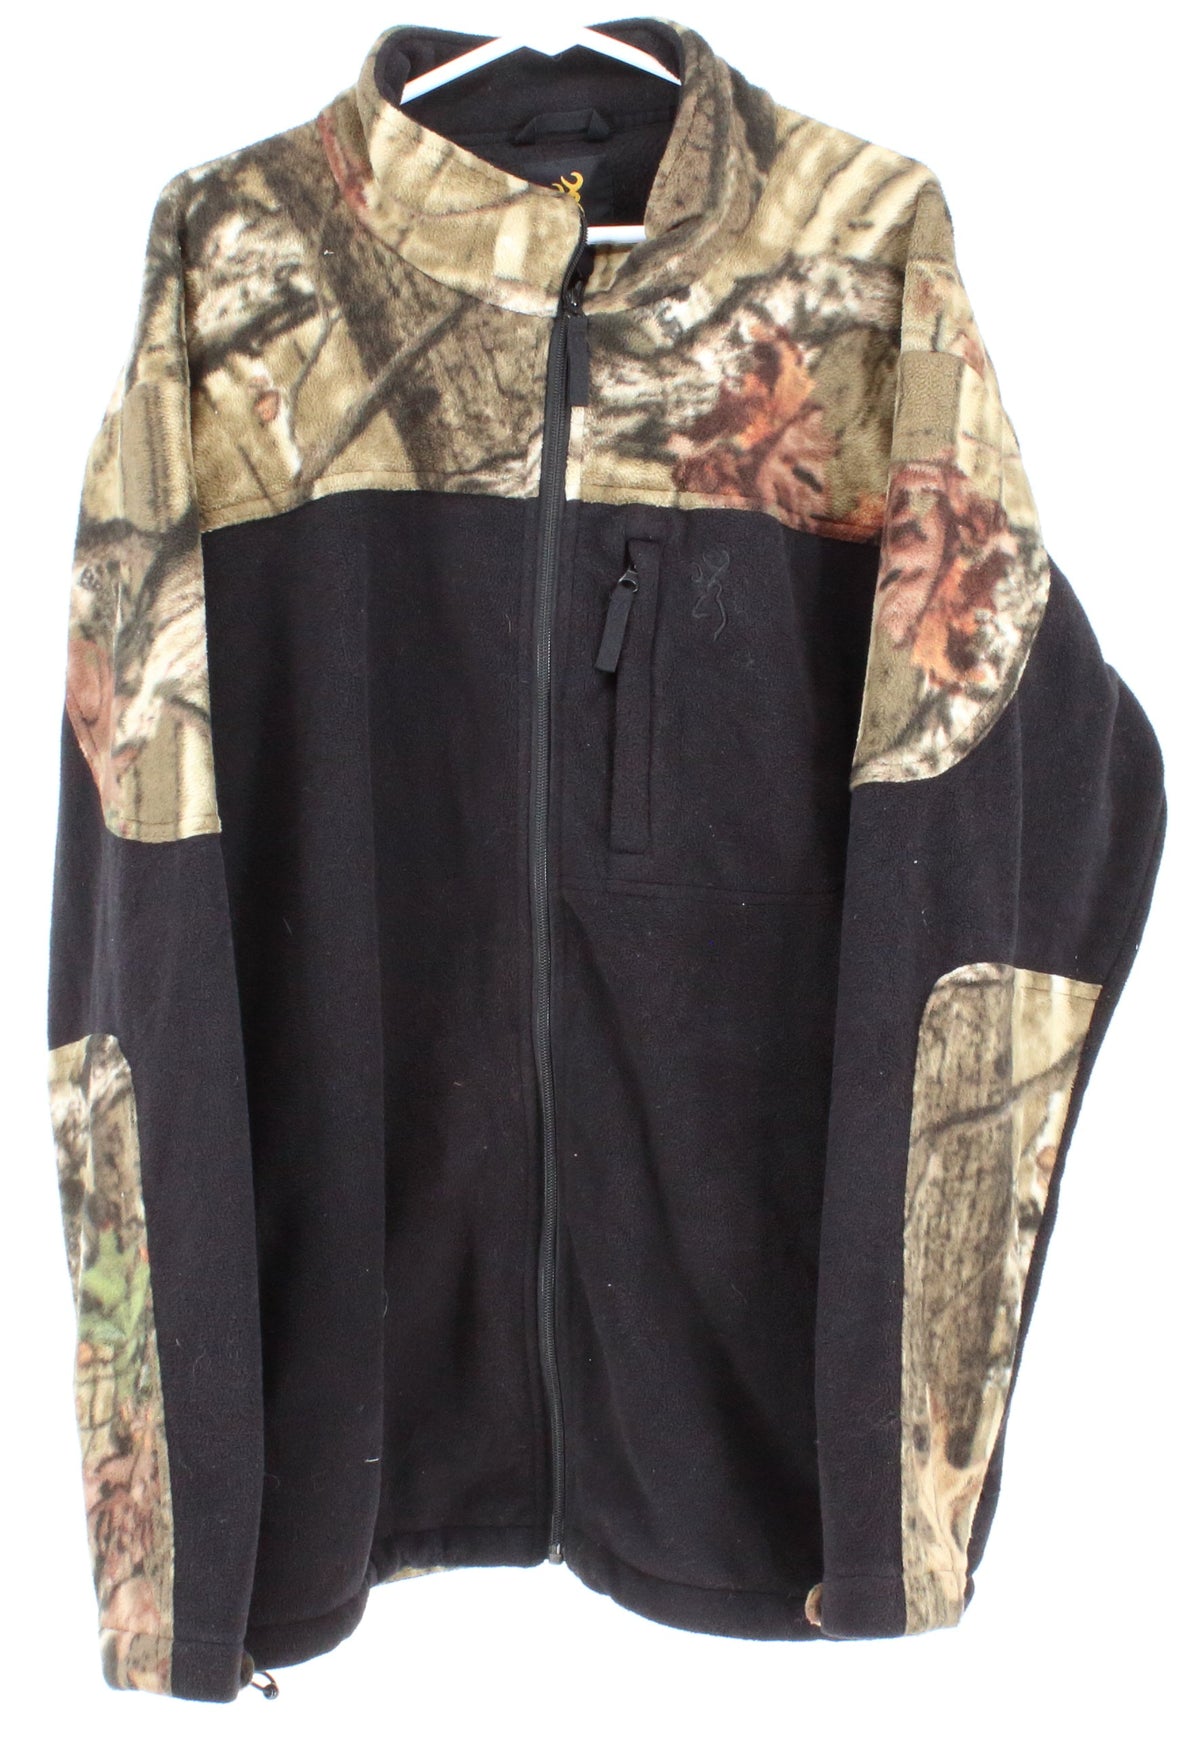 Browning Camo Print Zip-Up Fleece Jacket